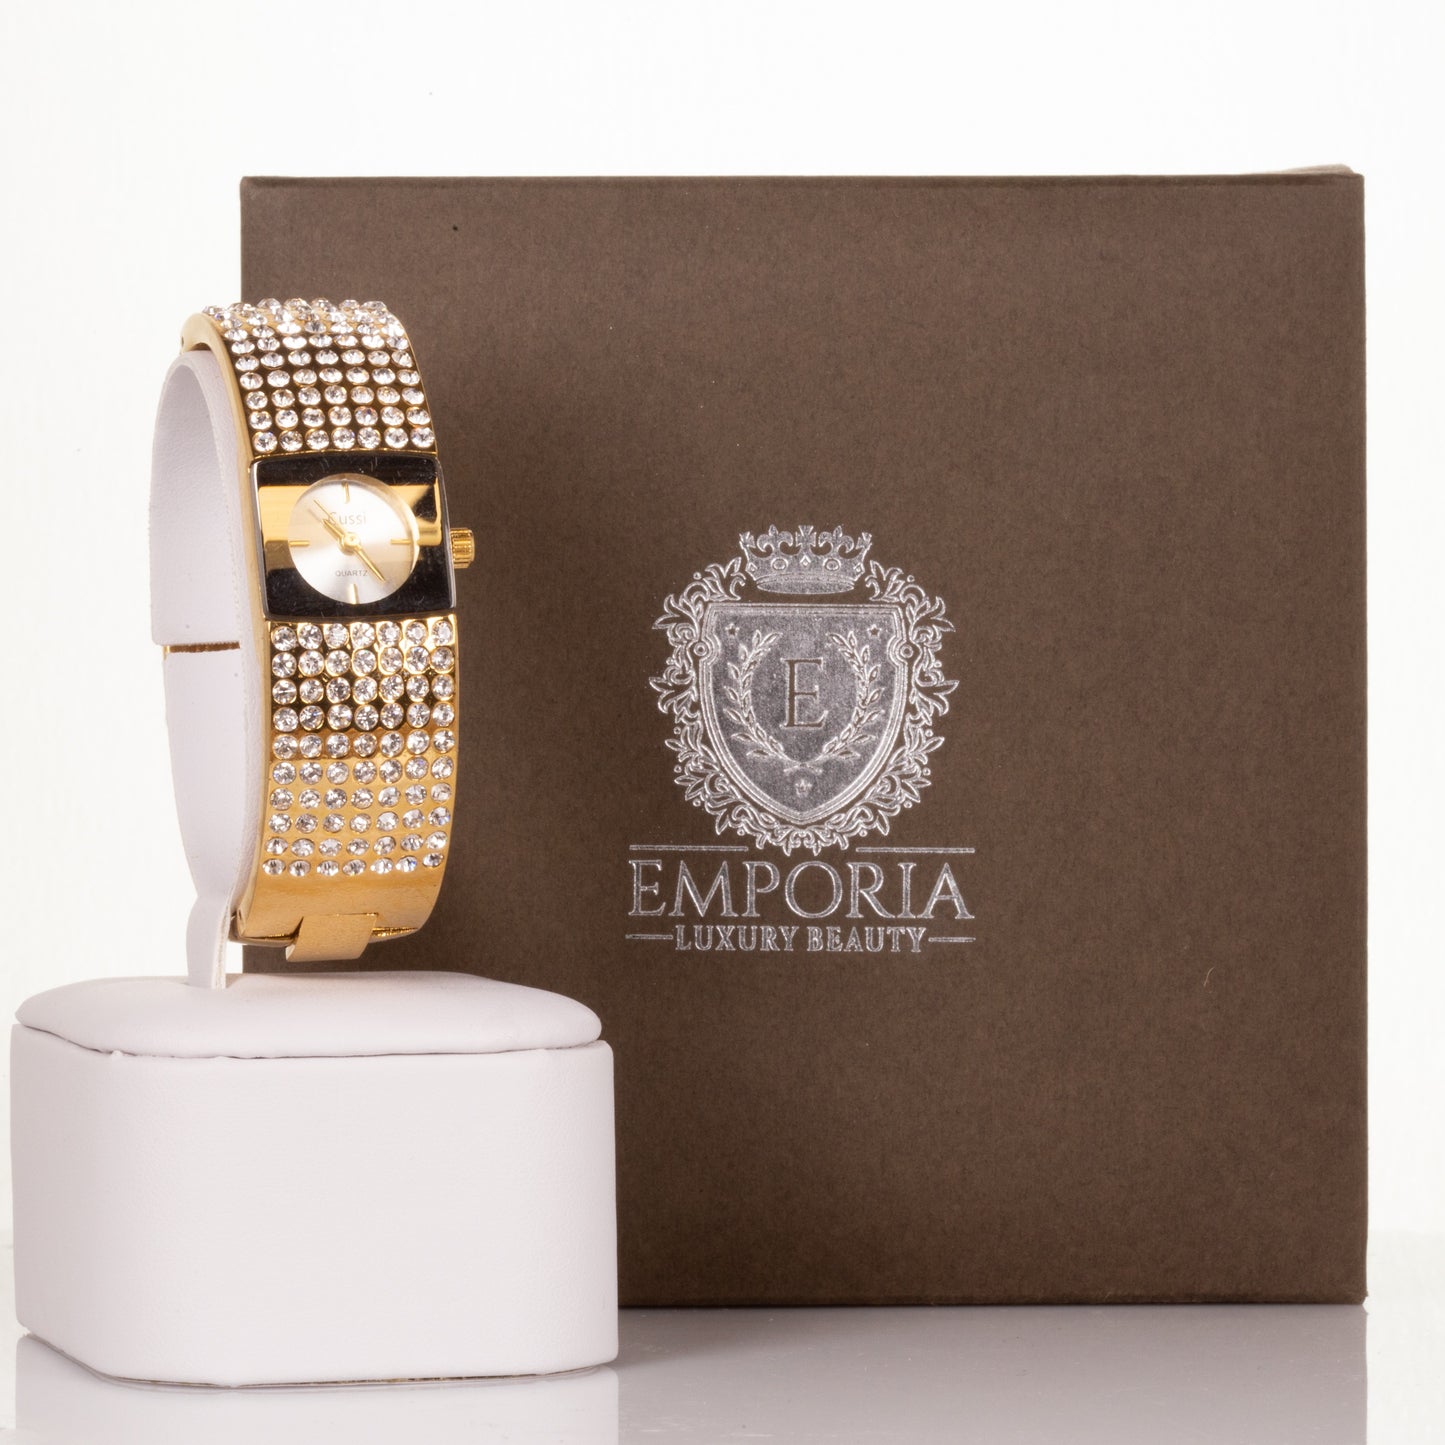 CUSSI dámské hodinky ve zlaté barvě se 7 řadami krystalů křemene